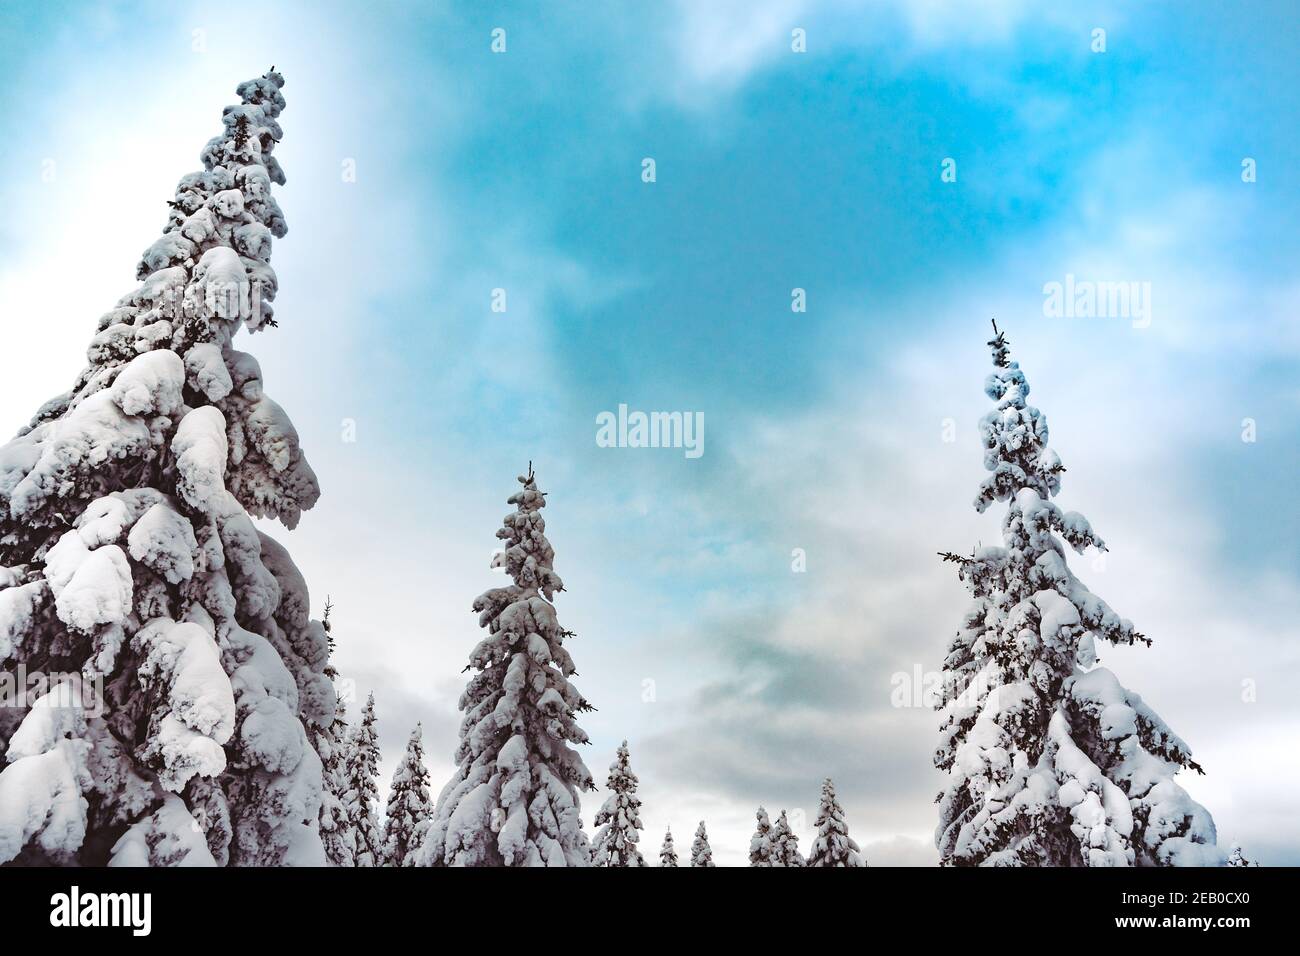 Sommet de sapins enneigés dans un ciel bleu. Forêt d'hiver gelée le jour ensoleillé Banque D'Images